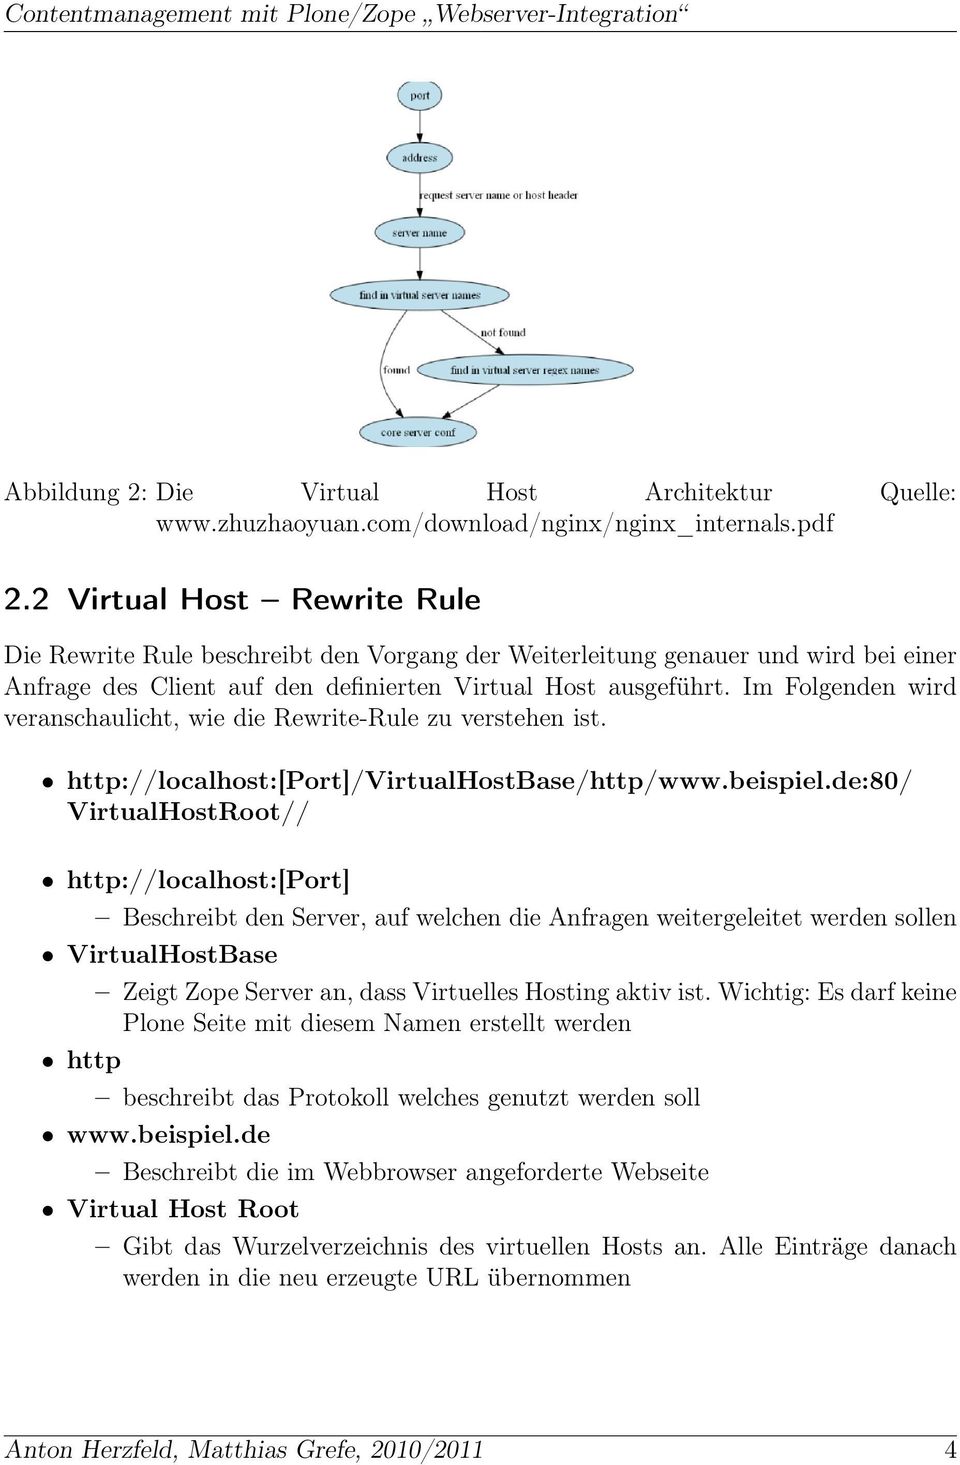 Im Folgenden wird veranschaulicht, wie die Rewrite-Rule zu verstehen ist. http://localhost:[port]/virtualhostbase/http/www.beispiel.